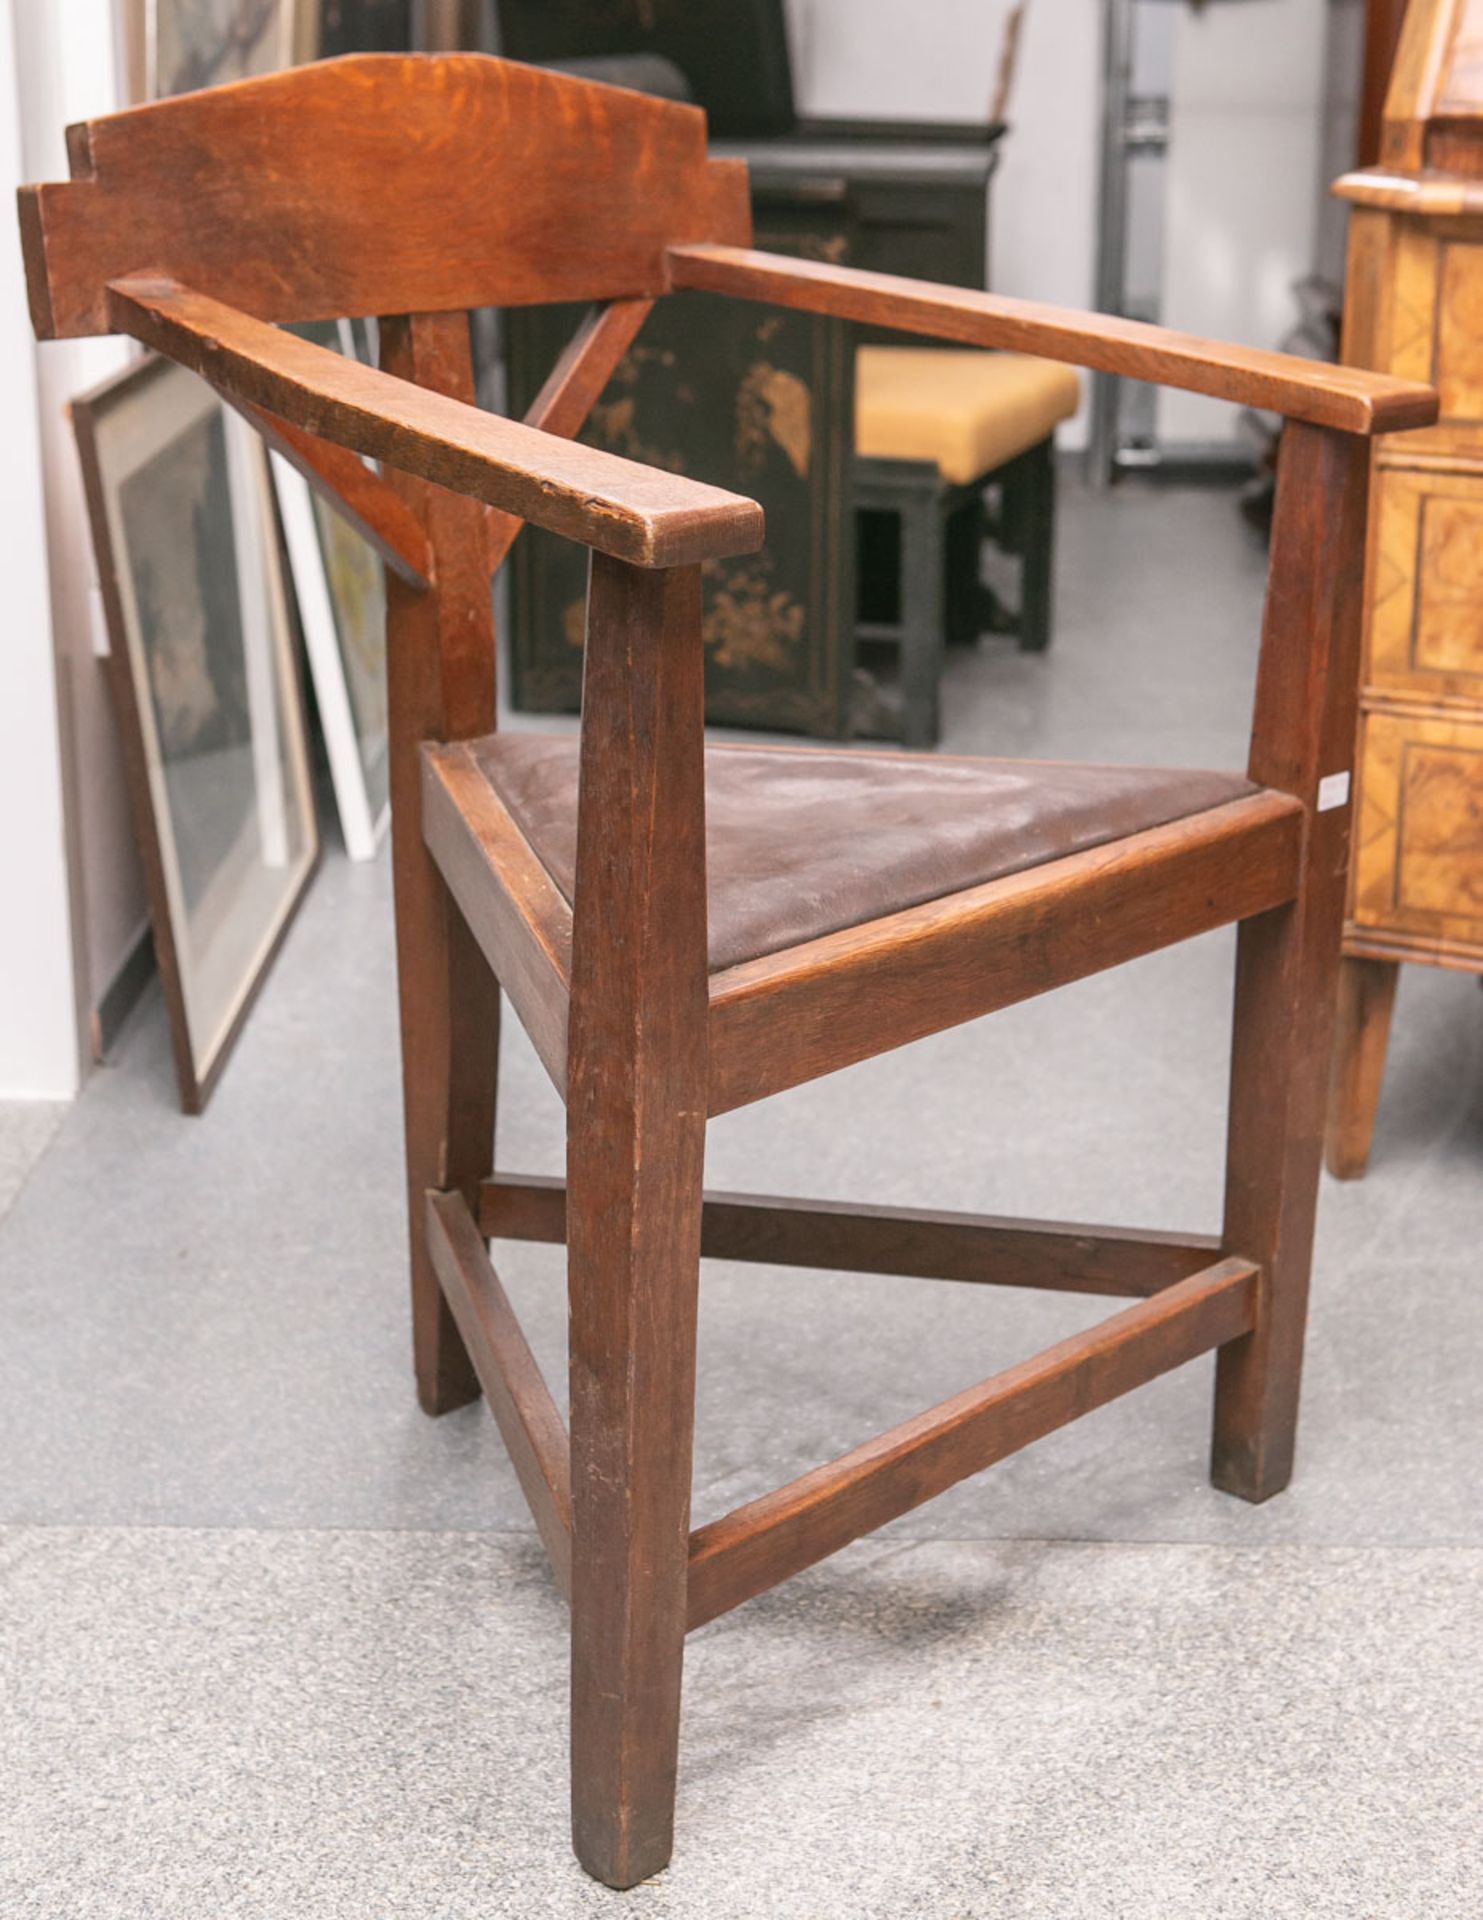 Alter Stuhl (wohl Hessen), Eichenholz, Dreieckform, ca. 86 x 61 x 52 cm, Sitzhöhe ca. 45,5 cm.